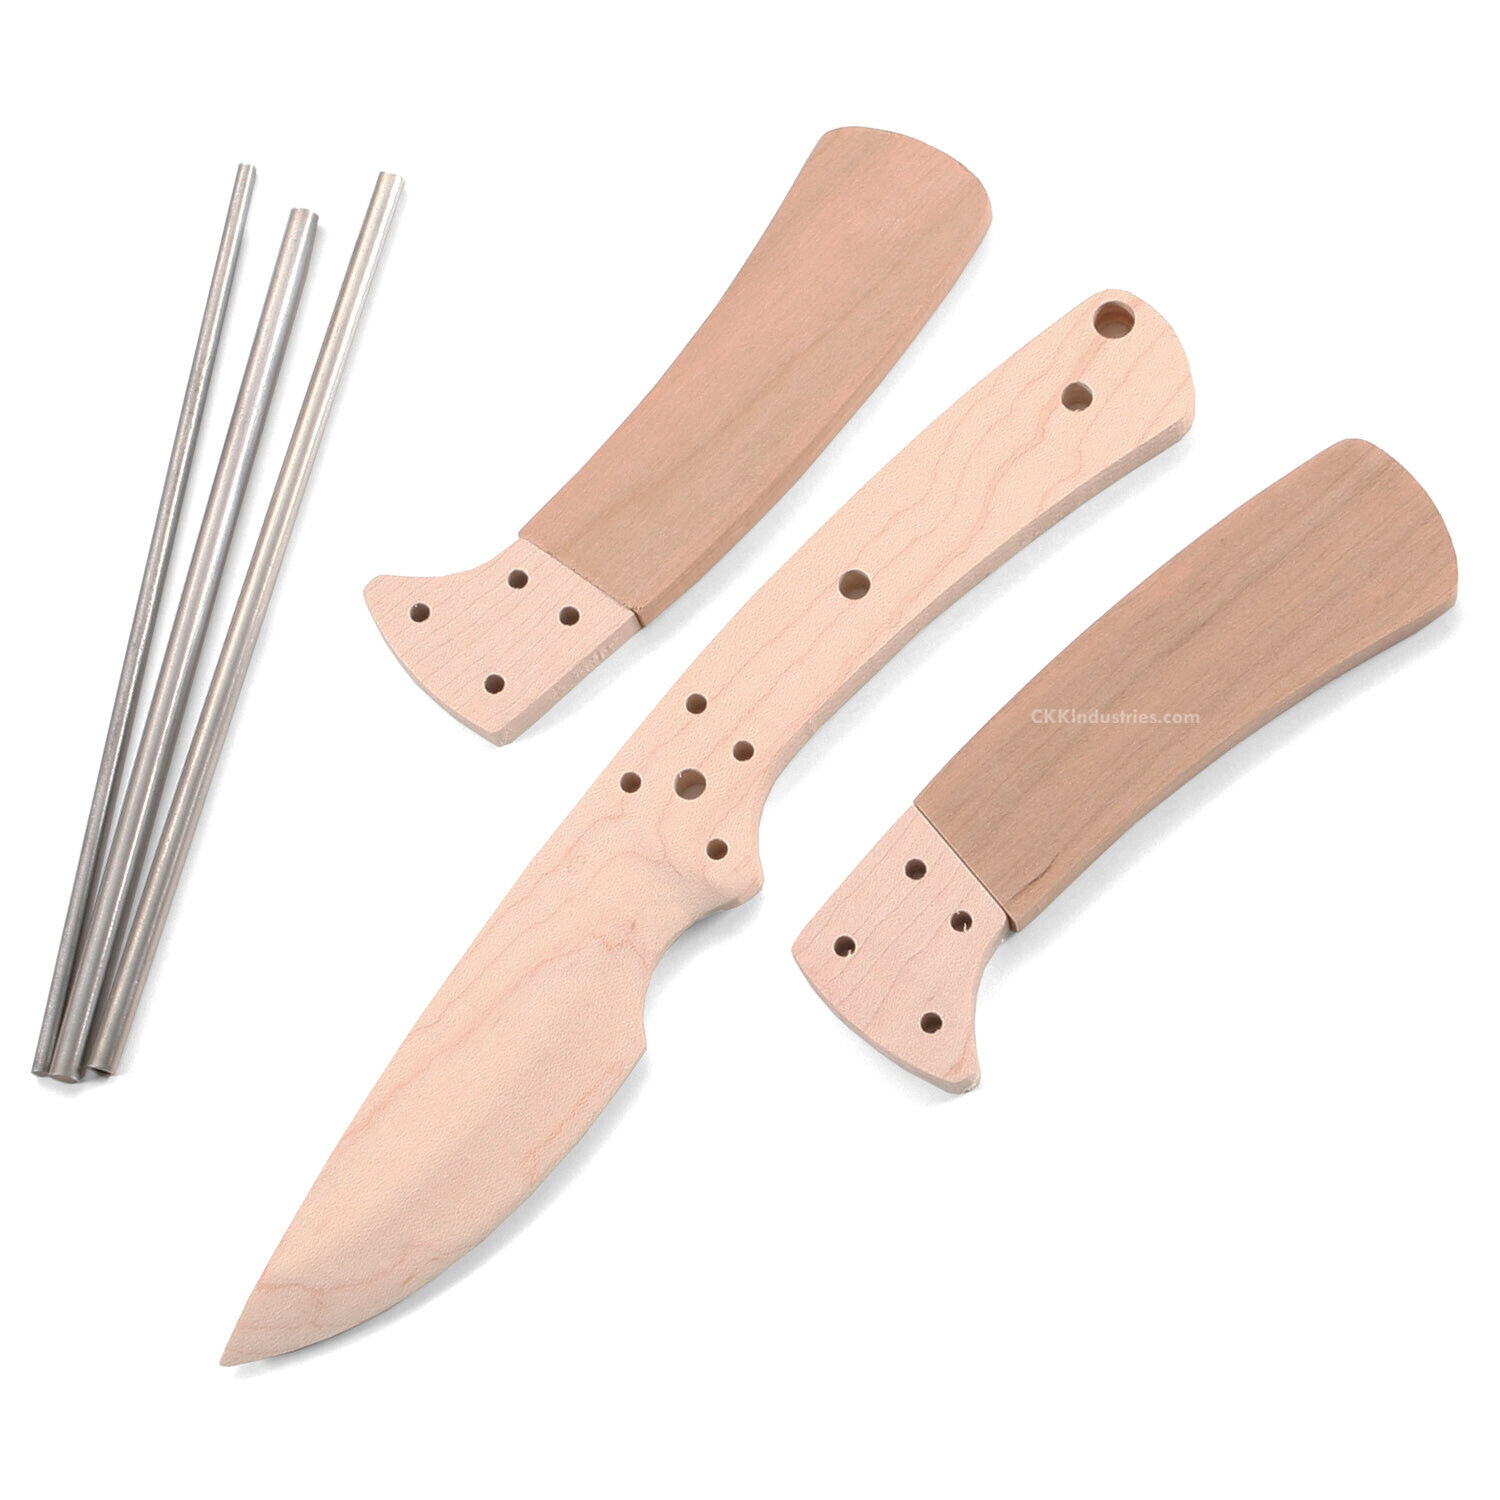 Modern Skinner - DIY Knife Making Kit - USA Design